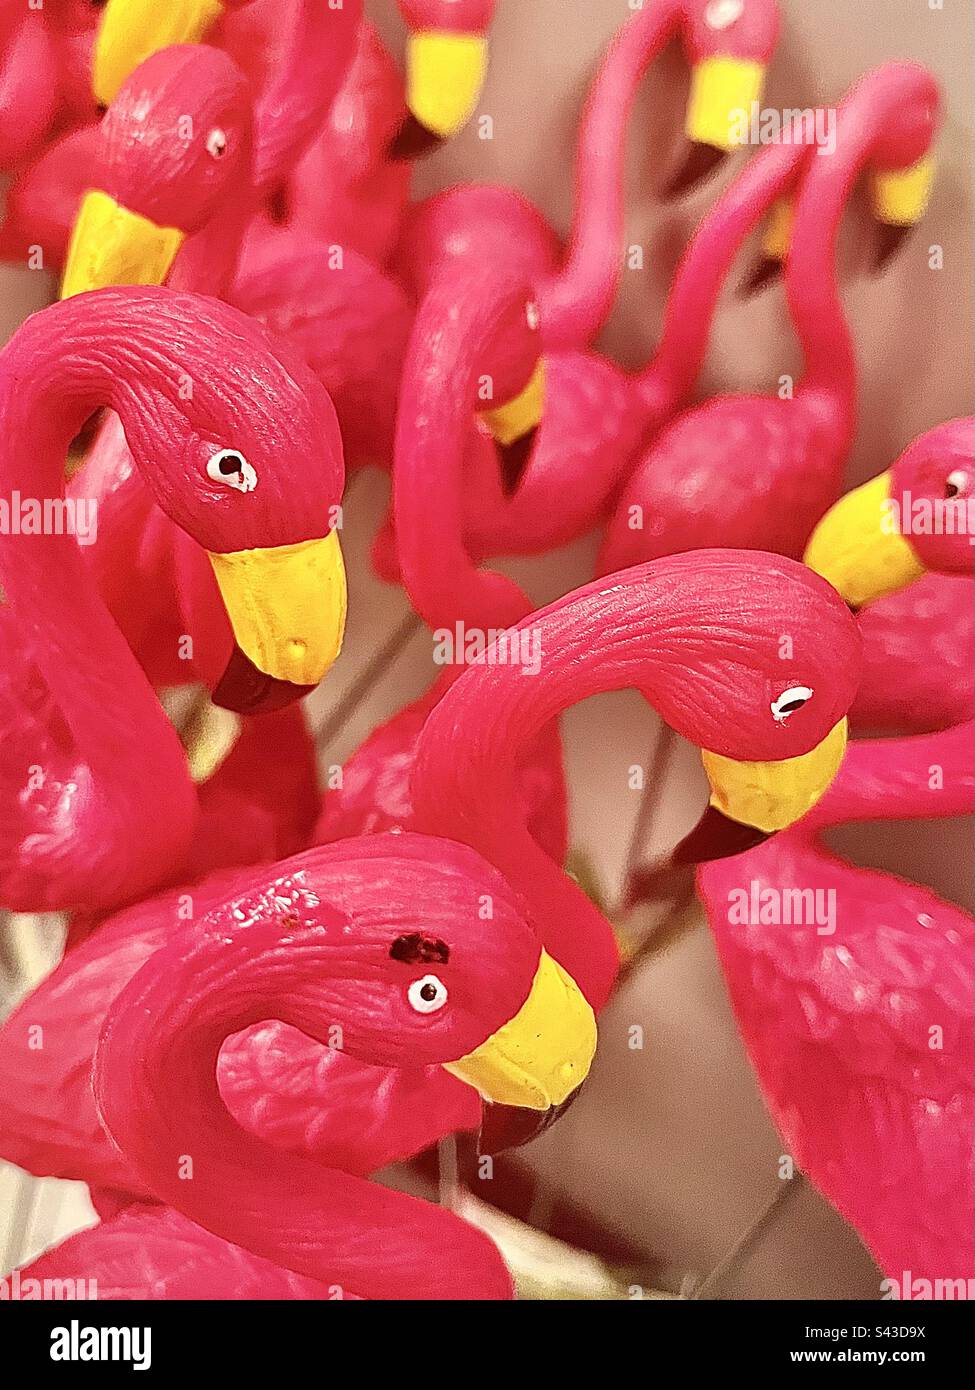 So many hot pink plastic garden flamingos. Stock Photo